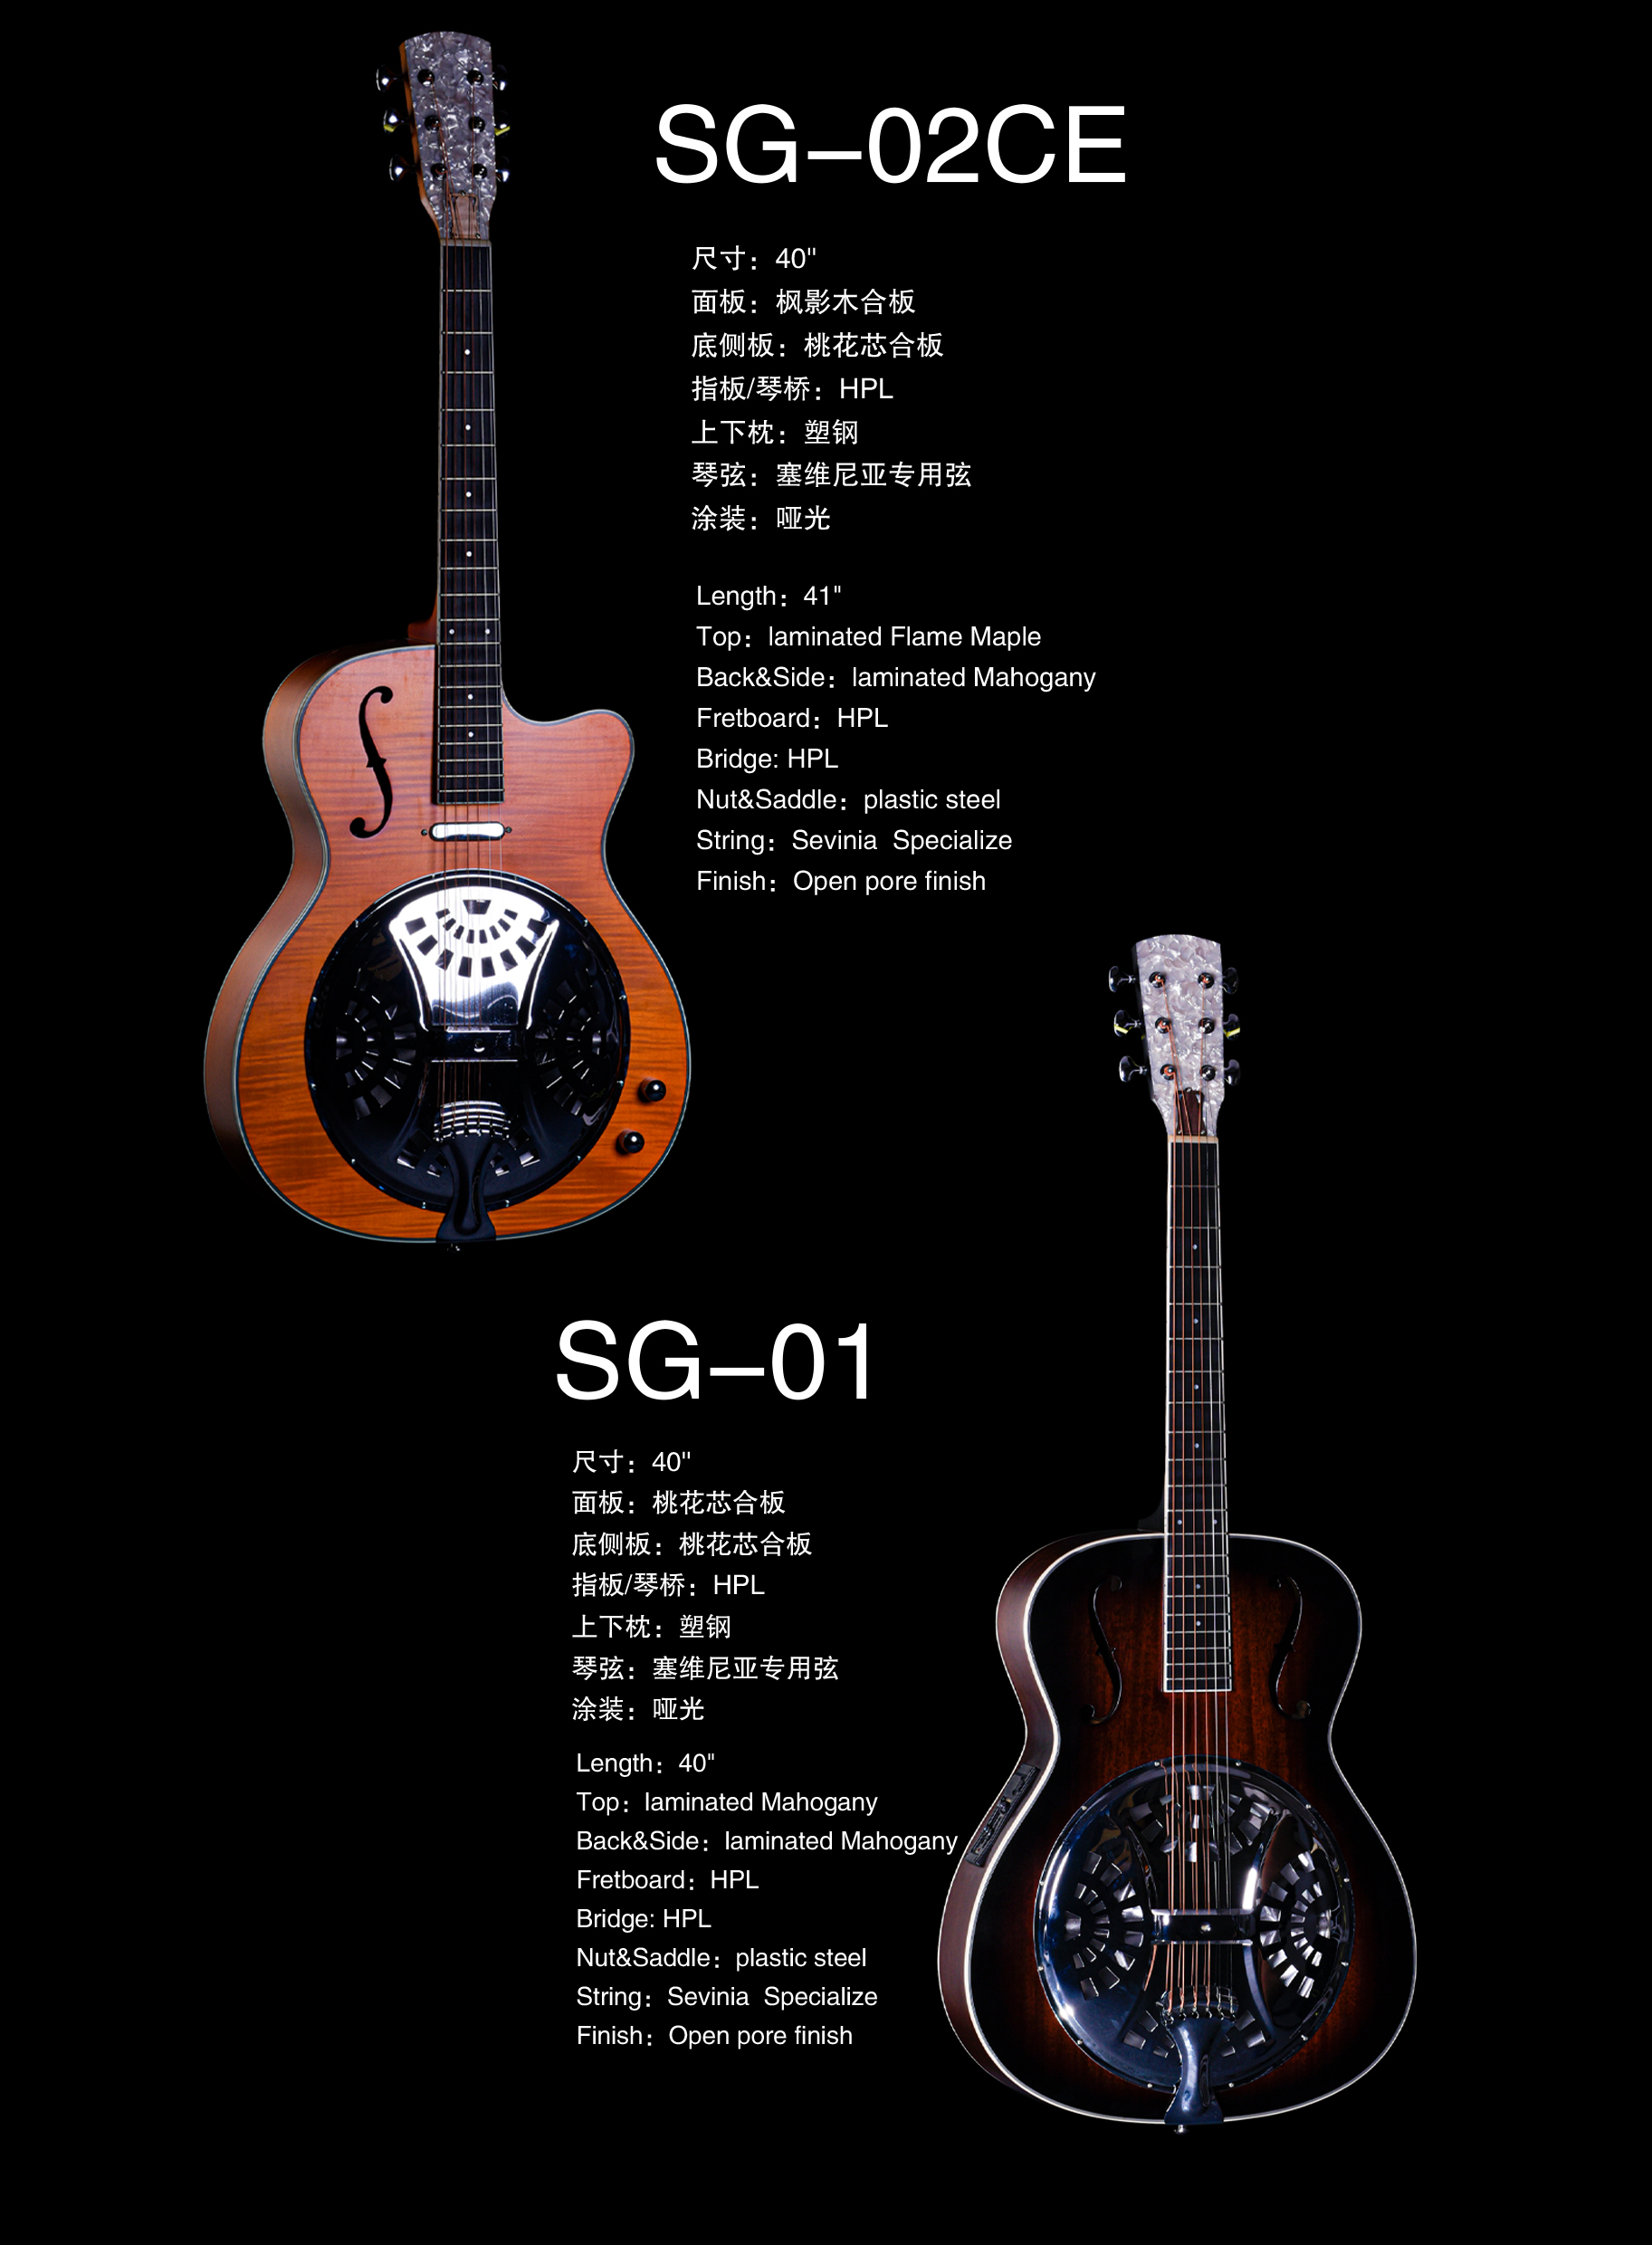 SG-02CE